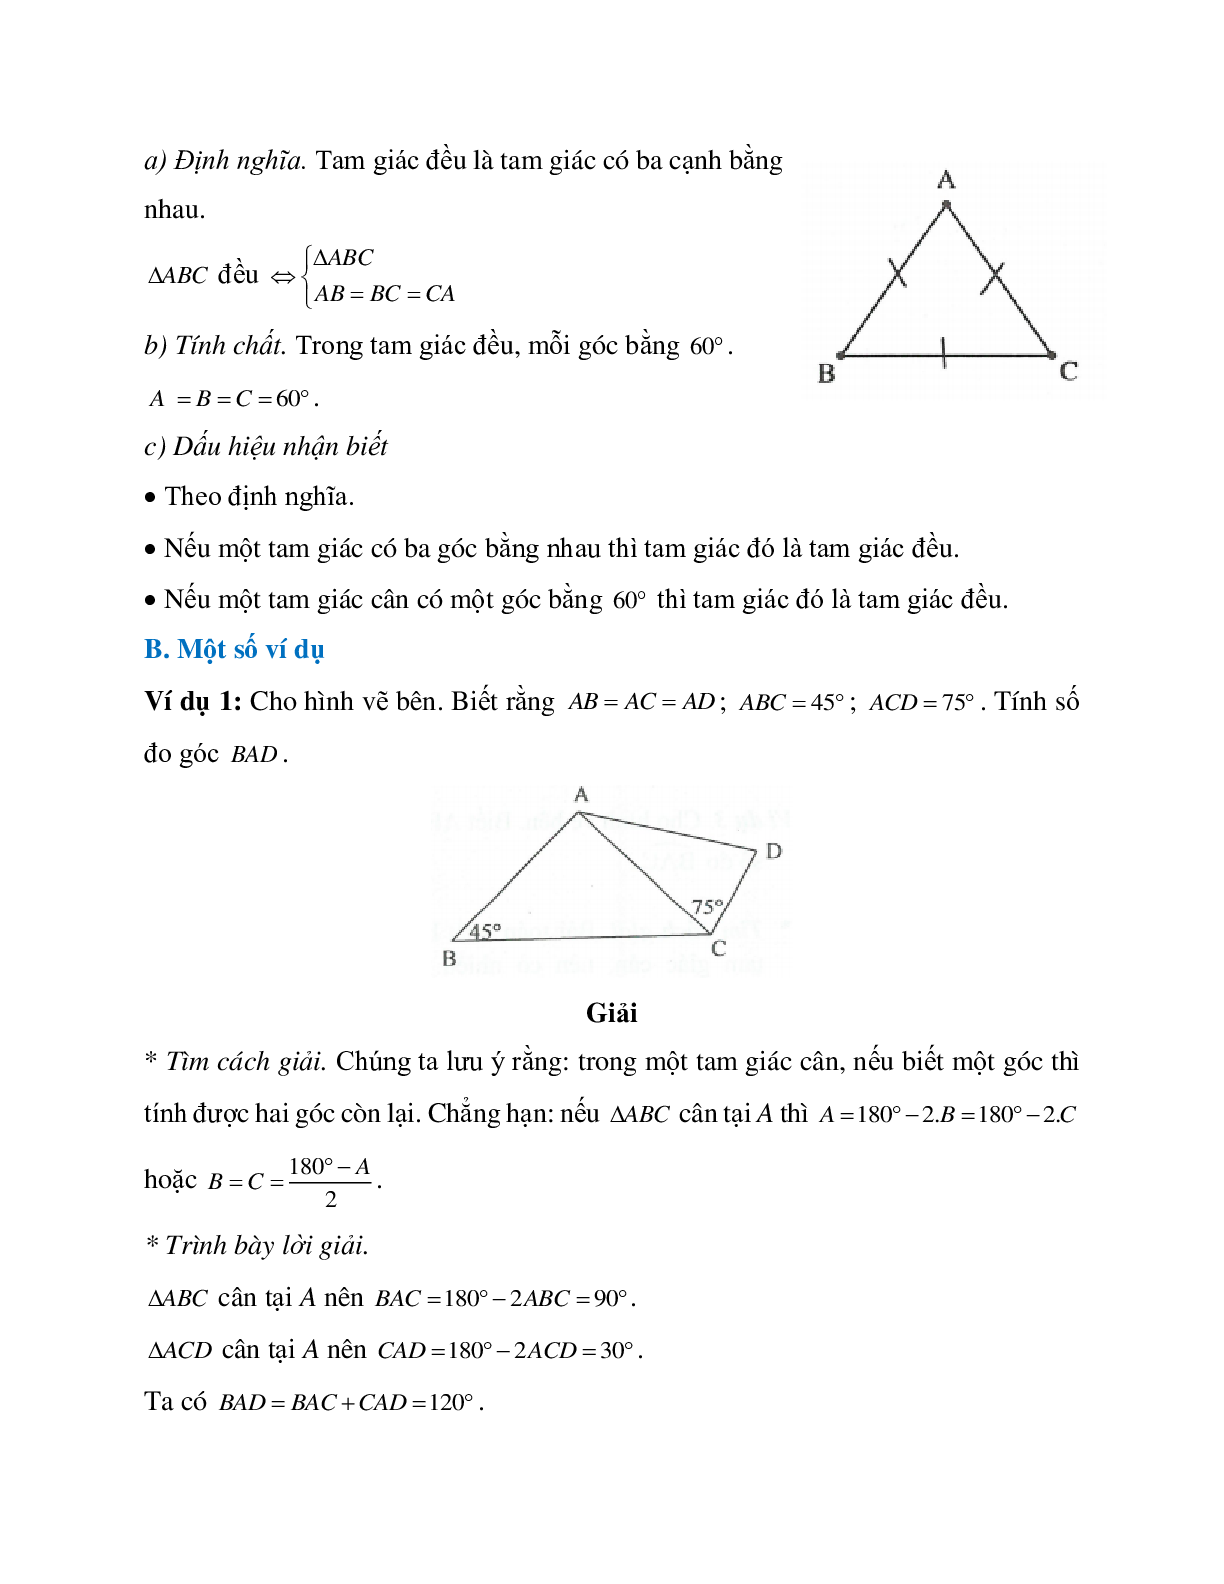 Phương pháp và bài tập về Tam giác cân - Tam giác đều có lời giải (trang 2)